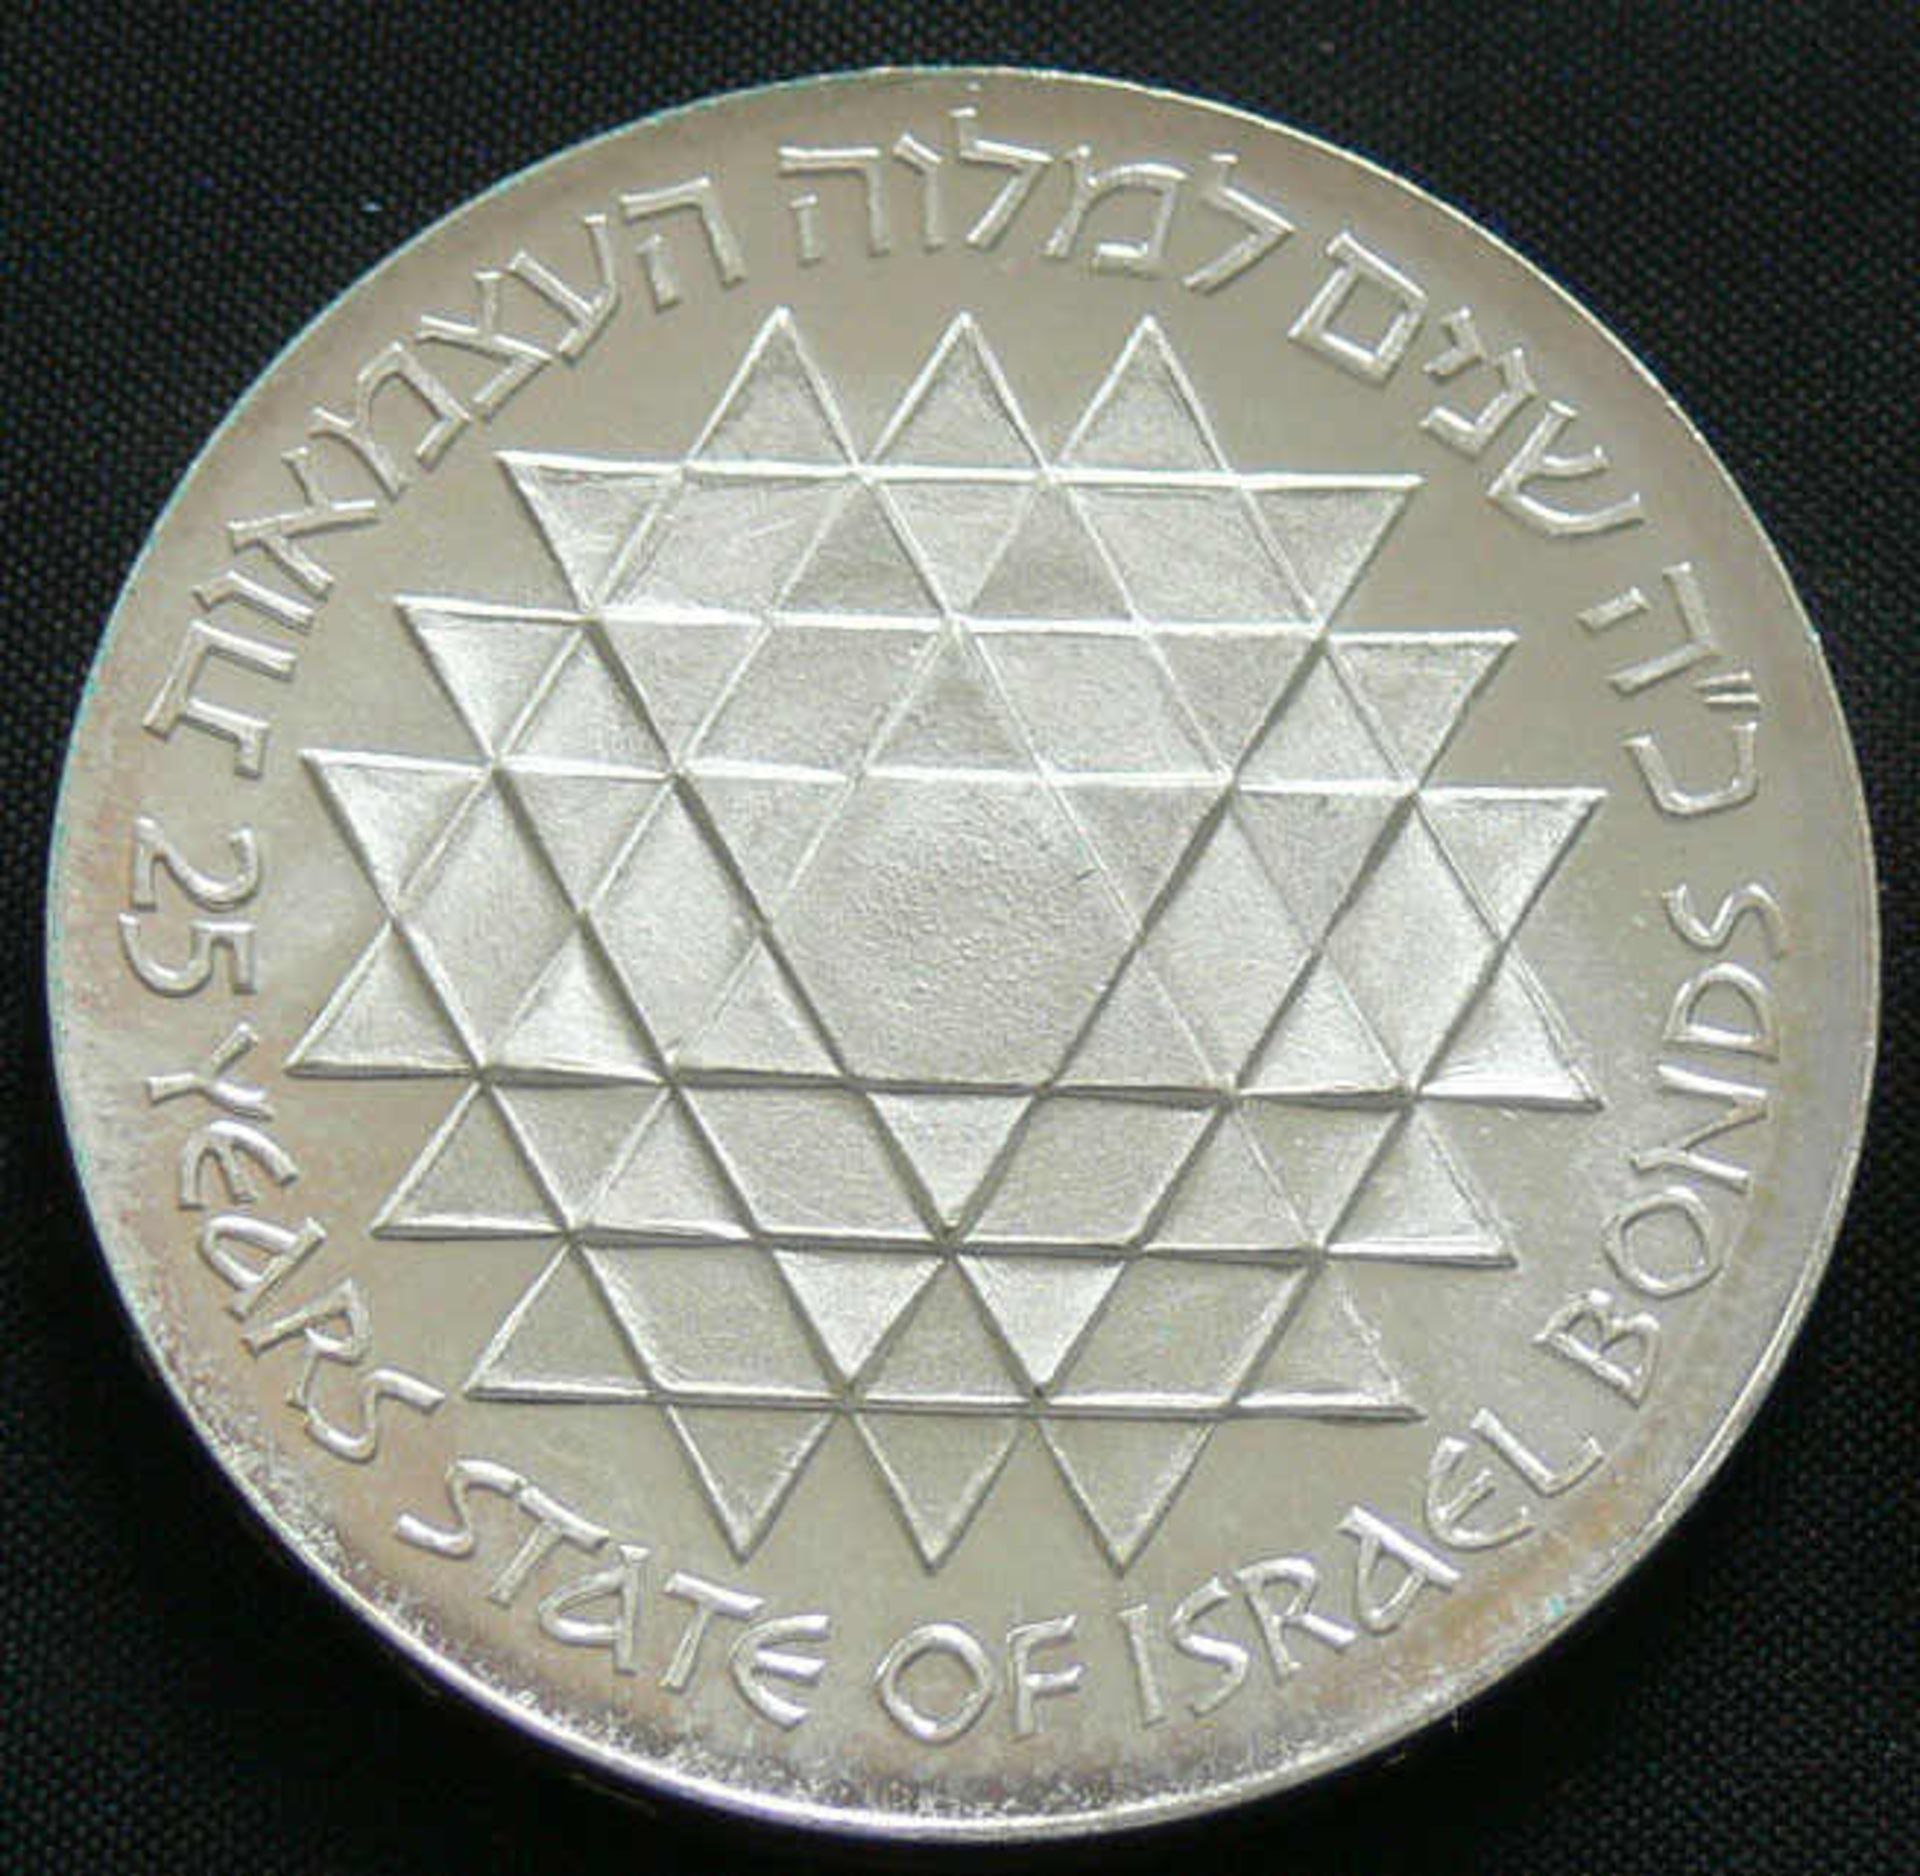 Israel 1975, 25.- Lirot - Silbermünze "25 Jahre State of Bonds". Erhaltung: stgl.Mindestpreis: 5 - Image 2 of 2